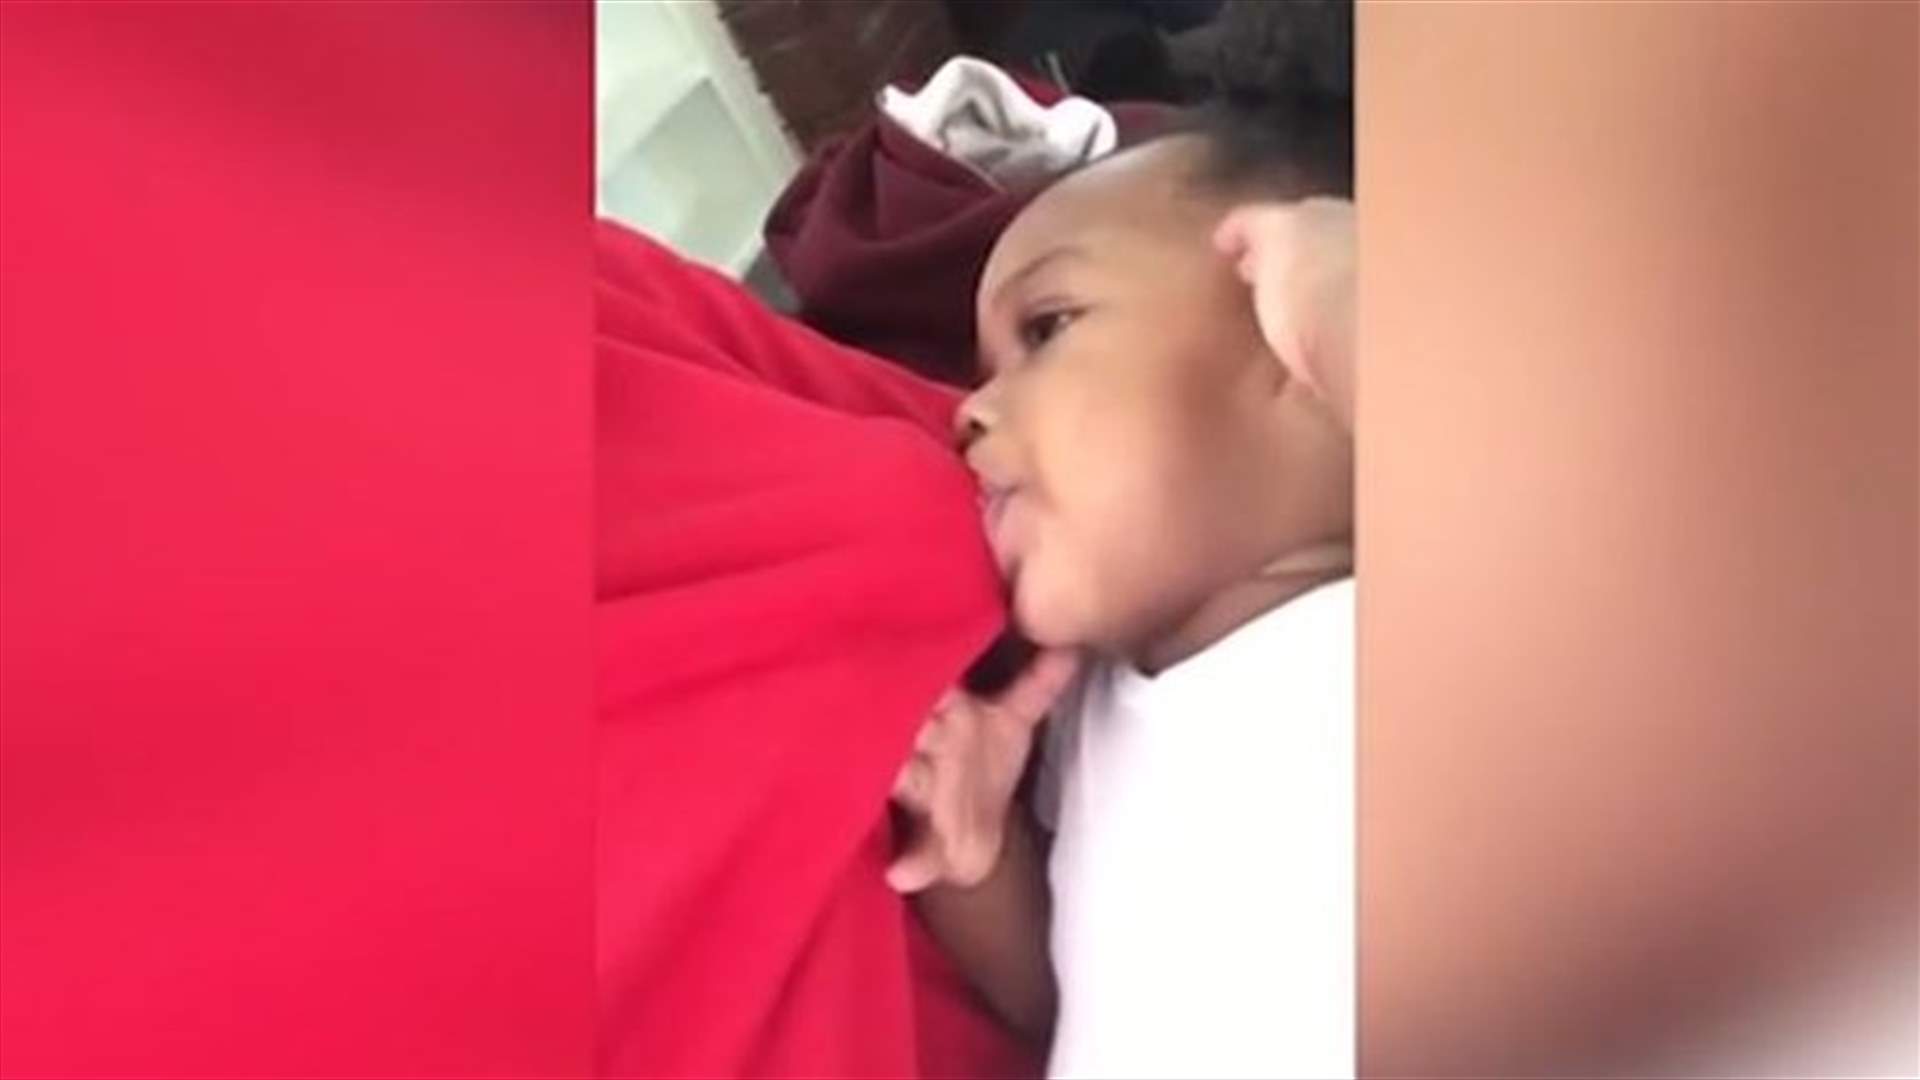 بالفيديو- أب يُرضع طفلته؟!